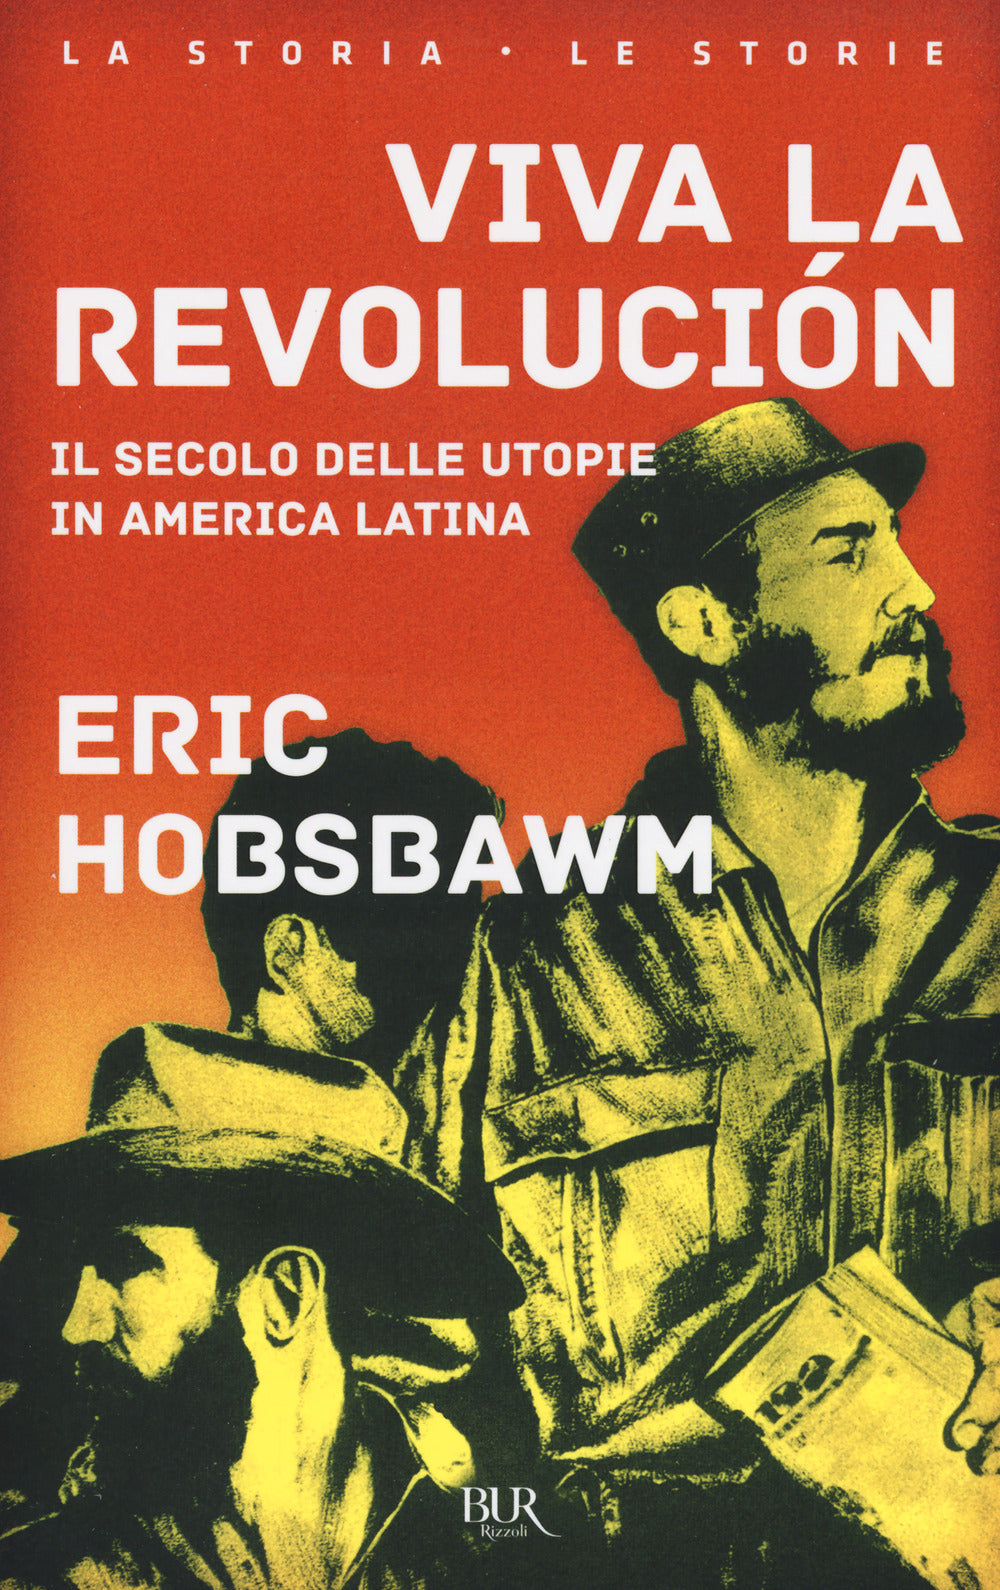 Viva la revolución. Il secolo delle utopie in America Latina.